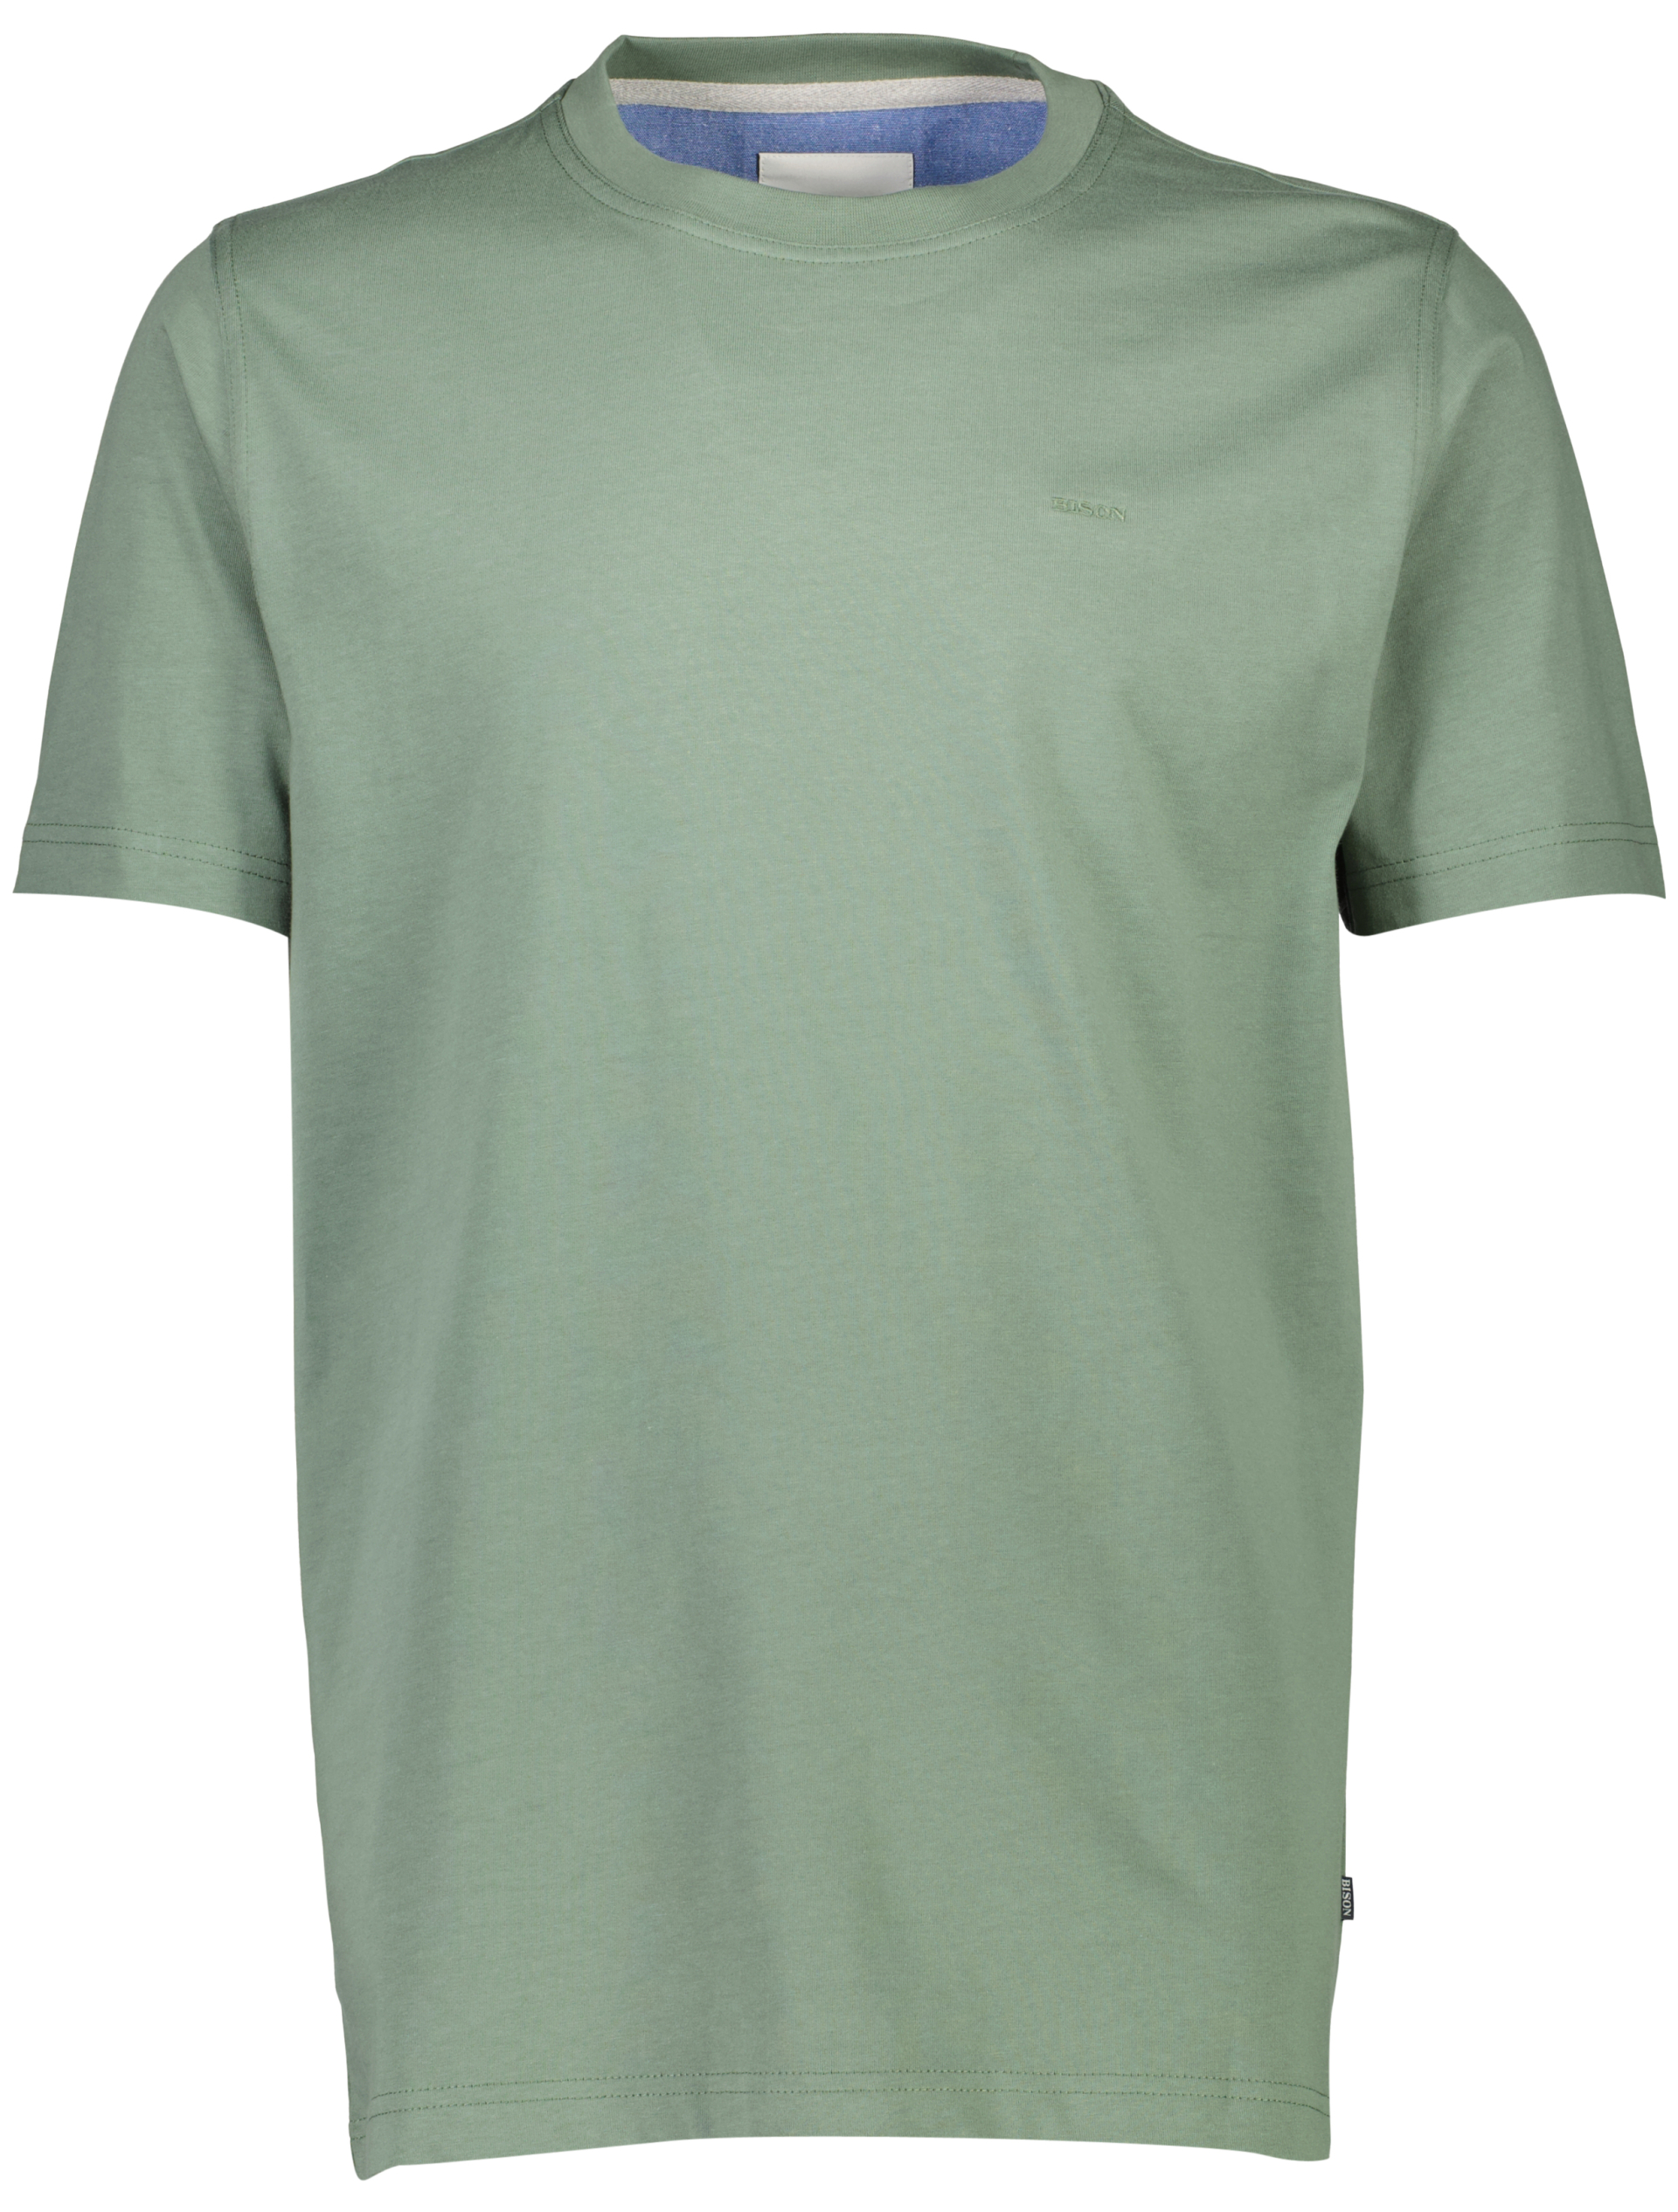 Bison T-shirt grön / green 224